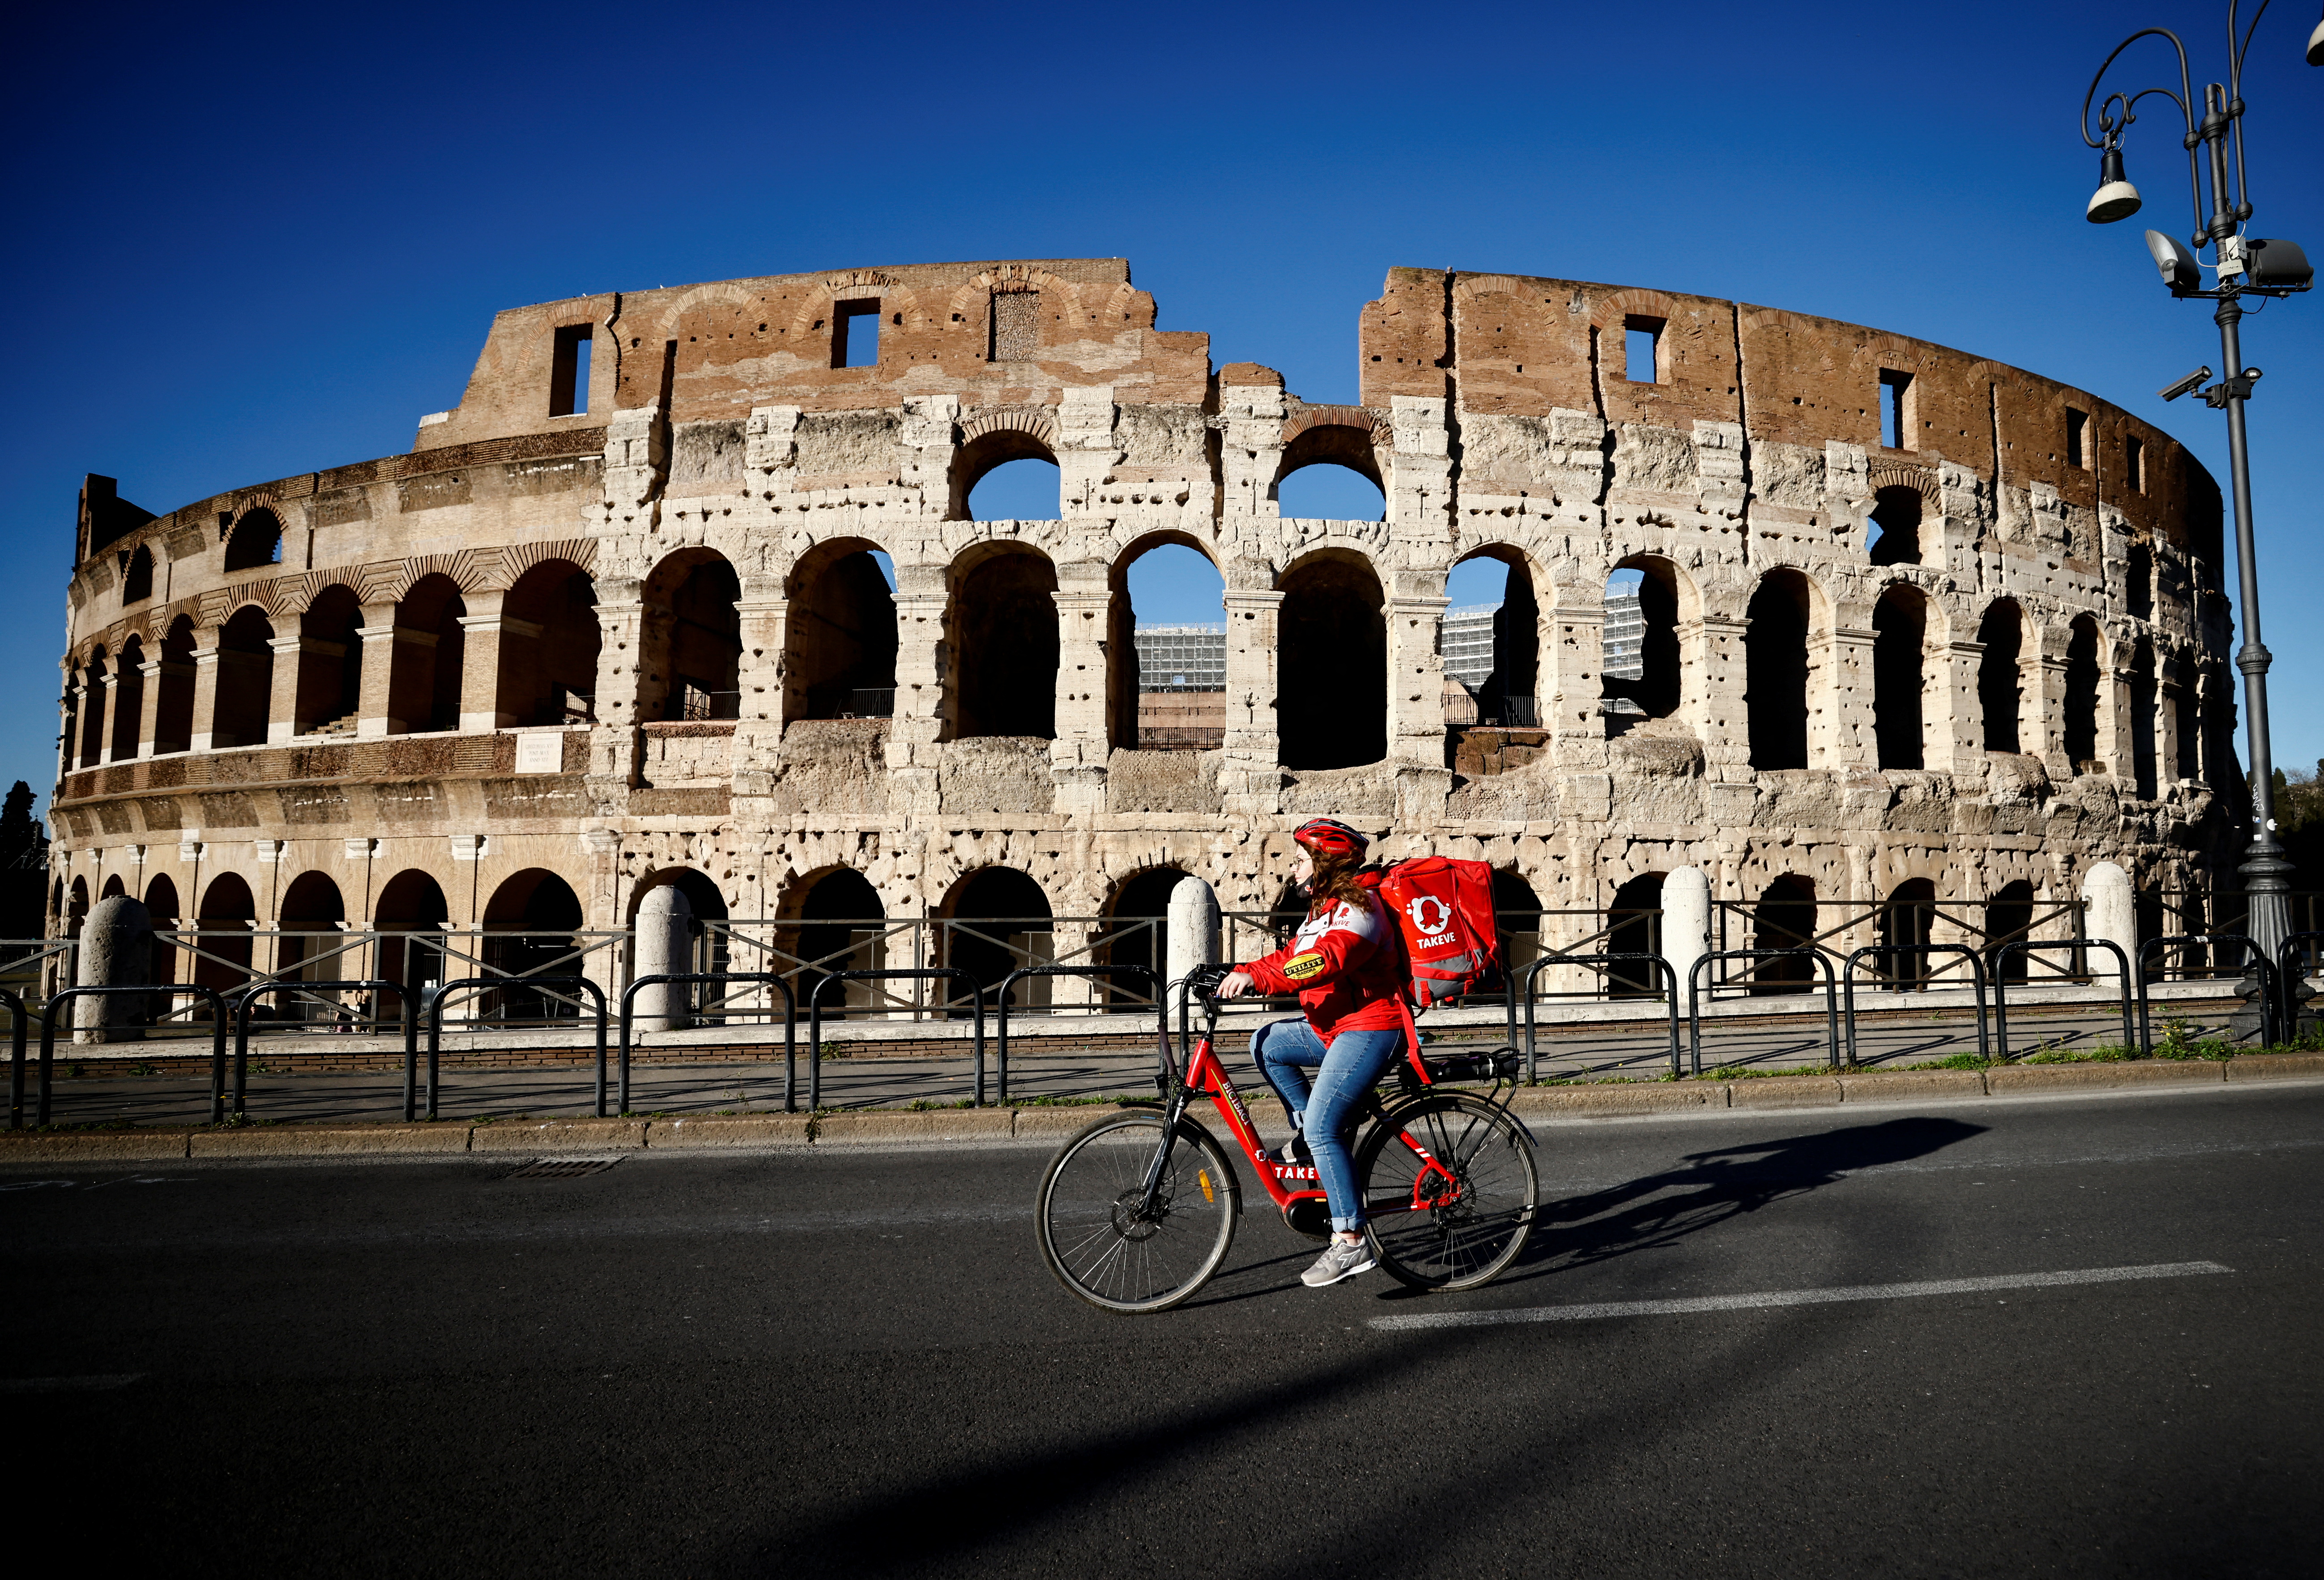 Una repartidora frente al Coliseo en Roma (REUTERS/Yara Nardi)